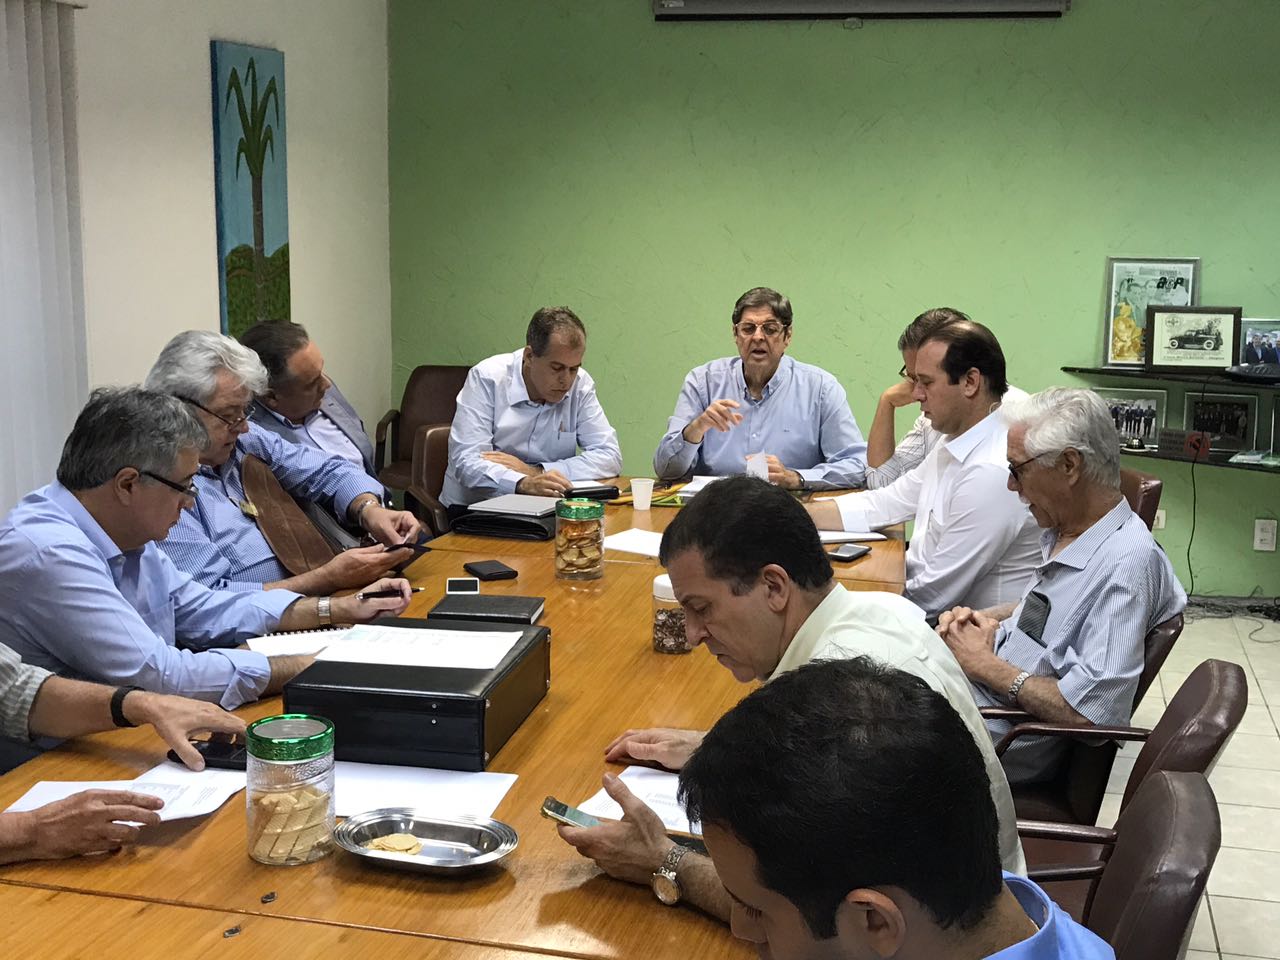 
Na sede do SINDAÇÚCAR/PE, Renato Cunha presidindo reunião sobre exportações de açúcar, com as presenças de associados, dia 18/setembro/2017
